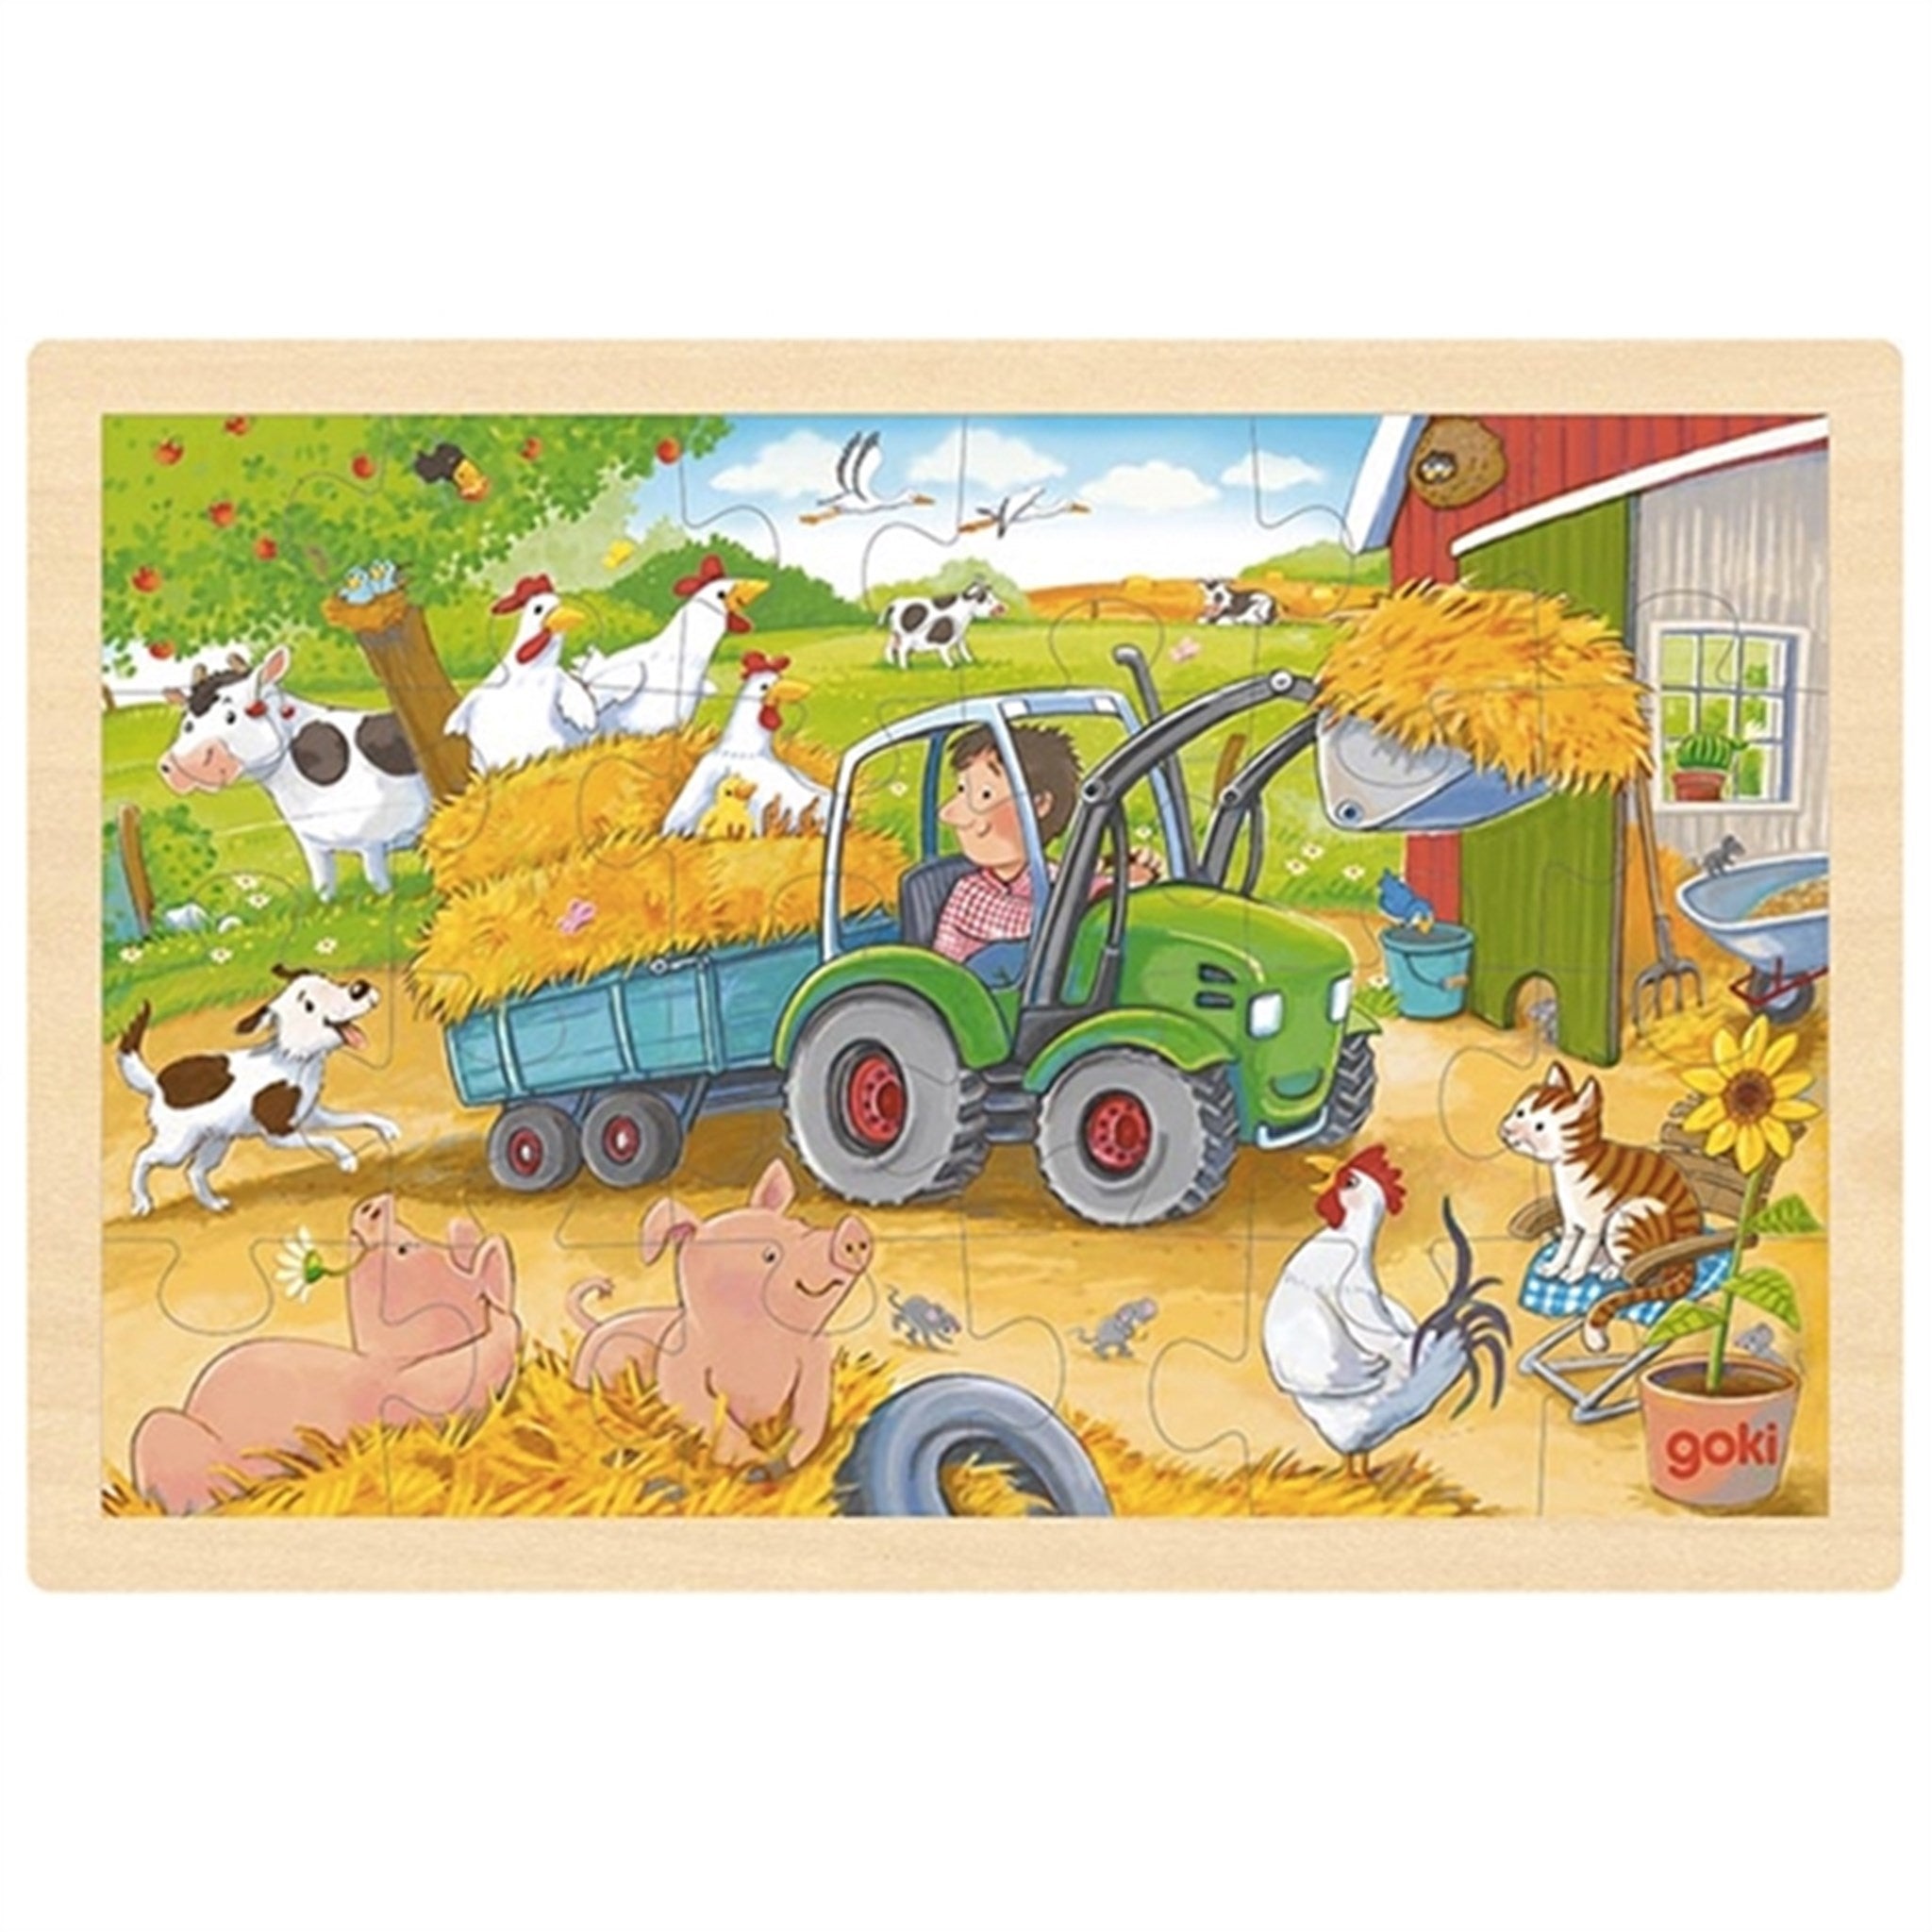 Goki Puzzle - Tractor